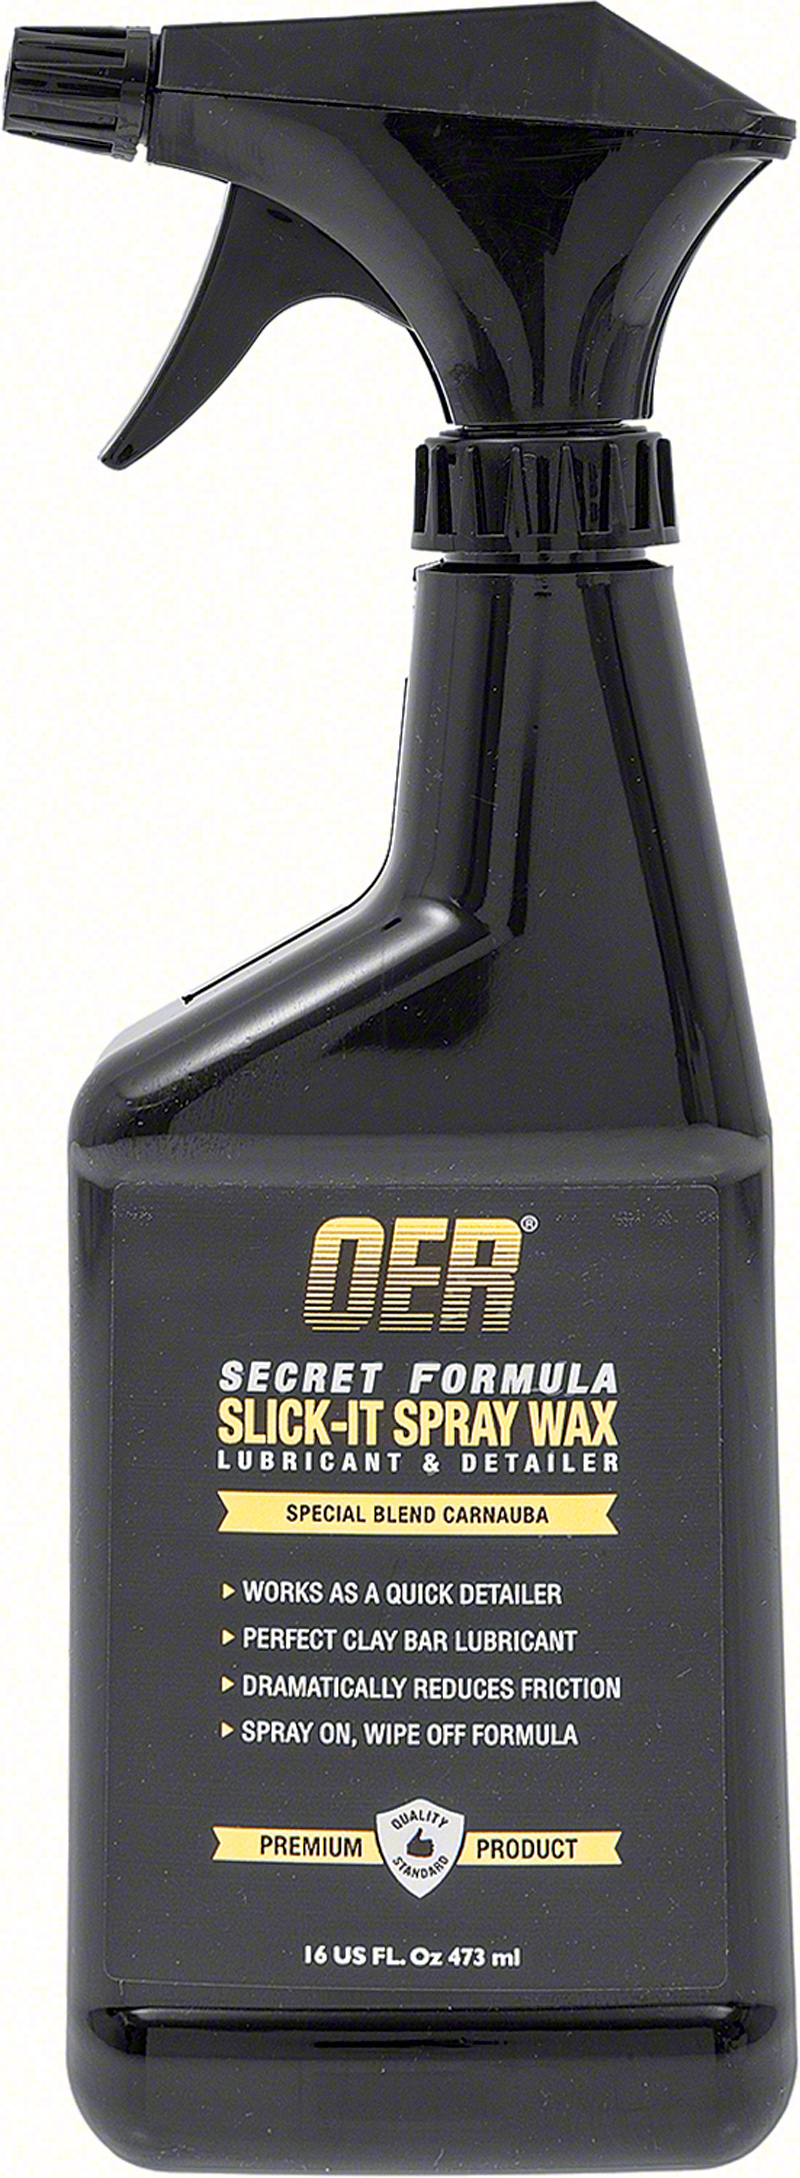 Secret Formula Slick It Clay Bar Lubricant And Spray Wax 16 Oz Spray Bottle 